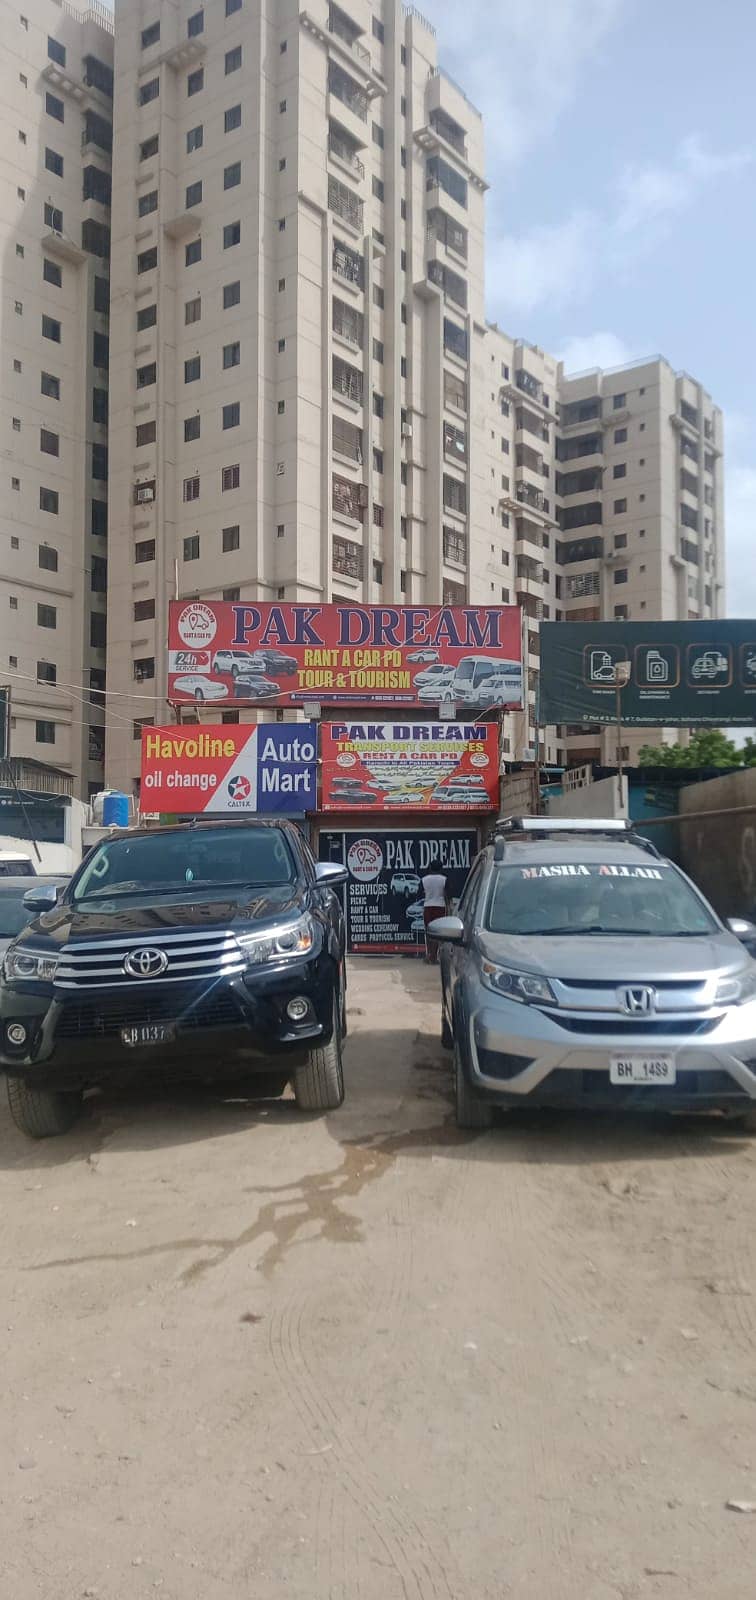 Rent a car/ Car rental/ Rent a car service to all Karachi 24/7) 15